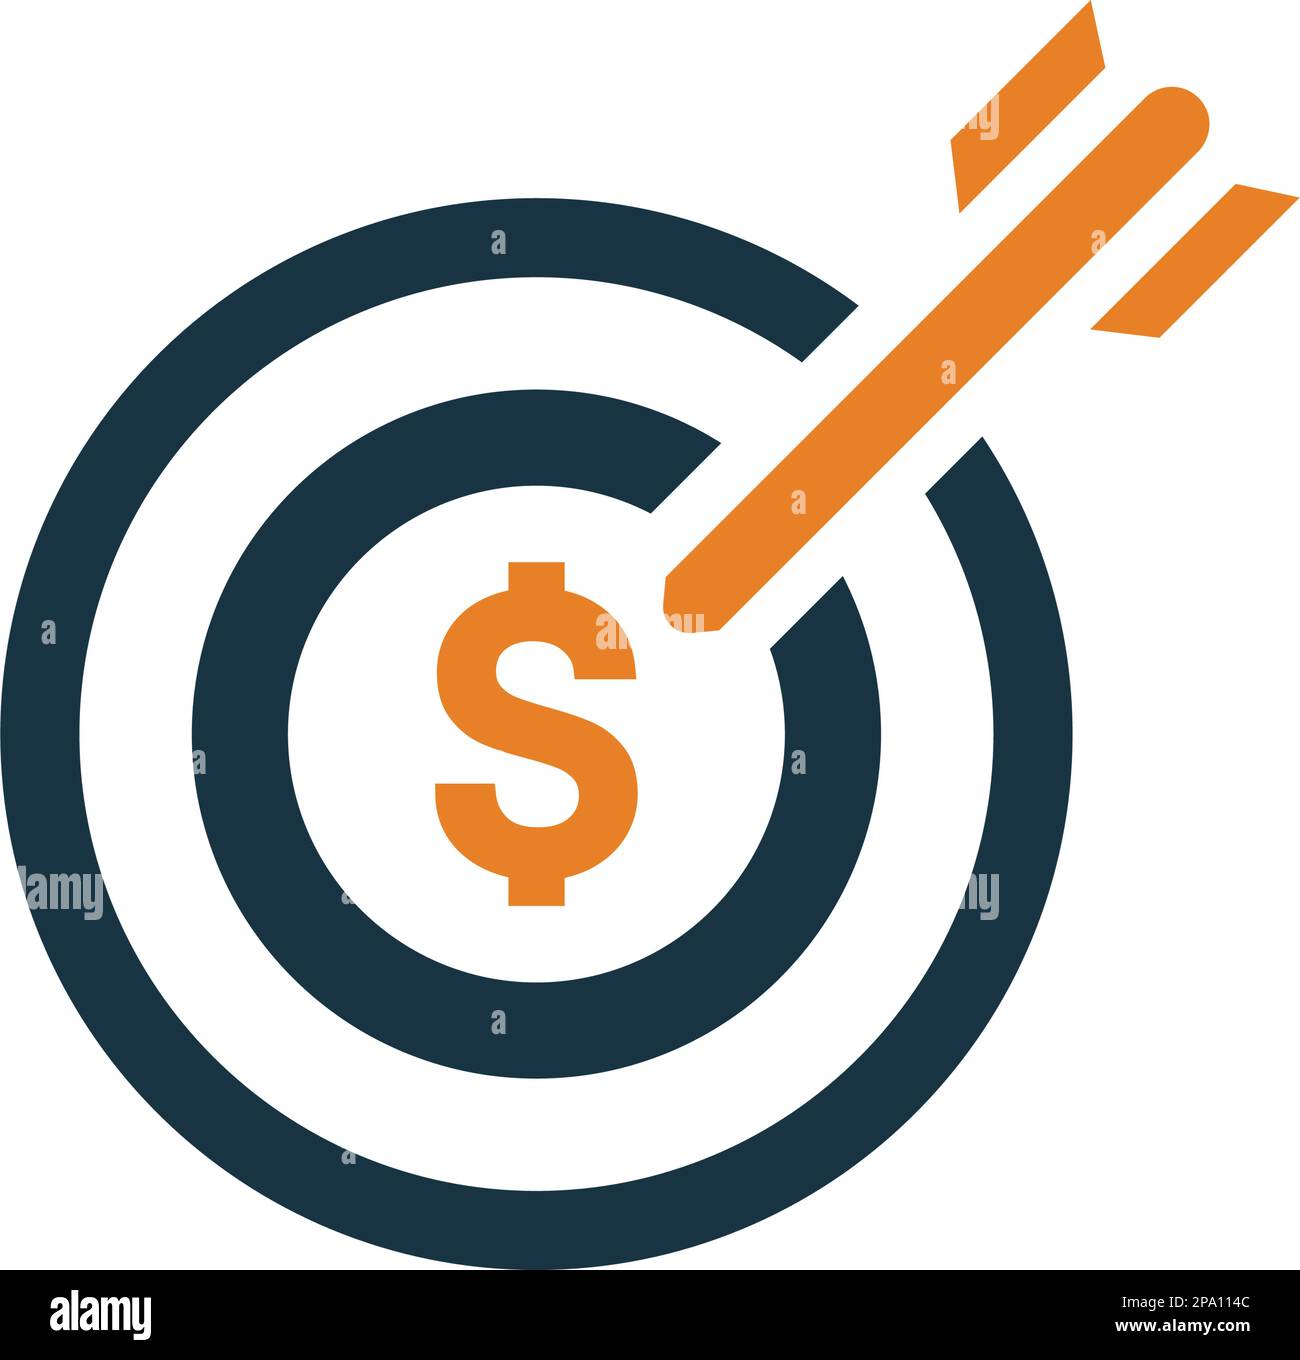 Profit, Target Money Icon ist die Verwendung bei der Gestaltung und Entwicklung von Websites, Werbung, Printmedien, Web oder jede Art von Design-Projekt. Stock Vektor